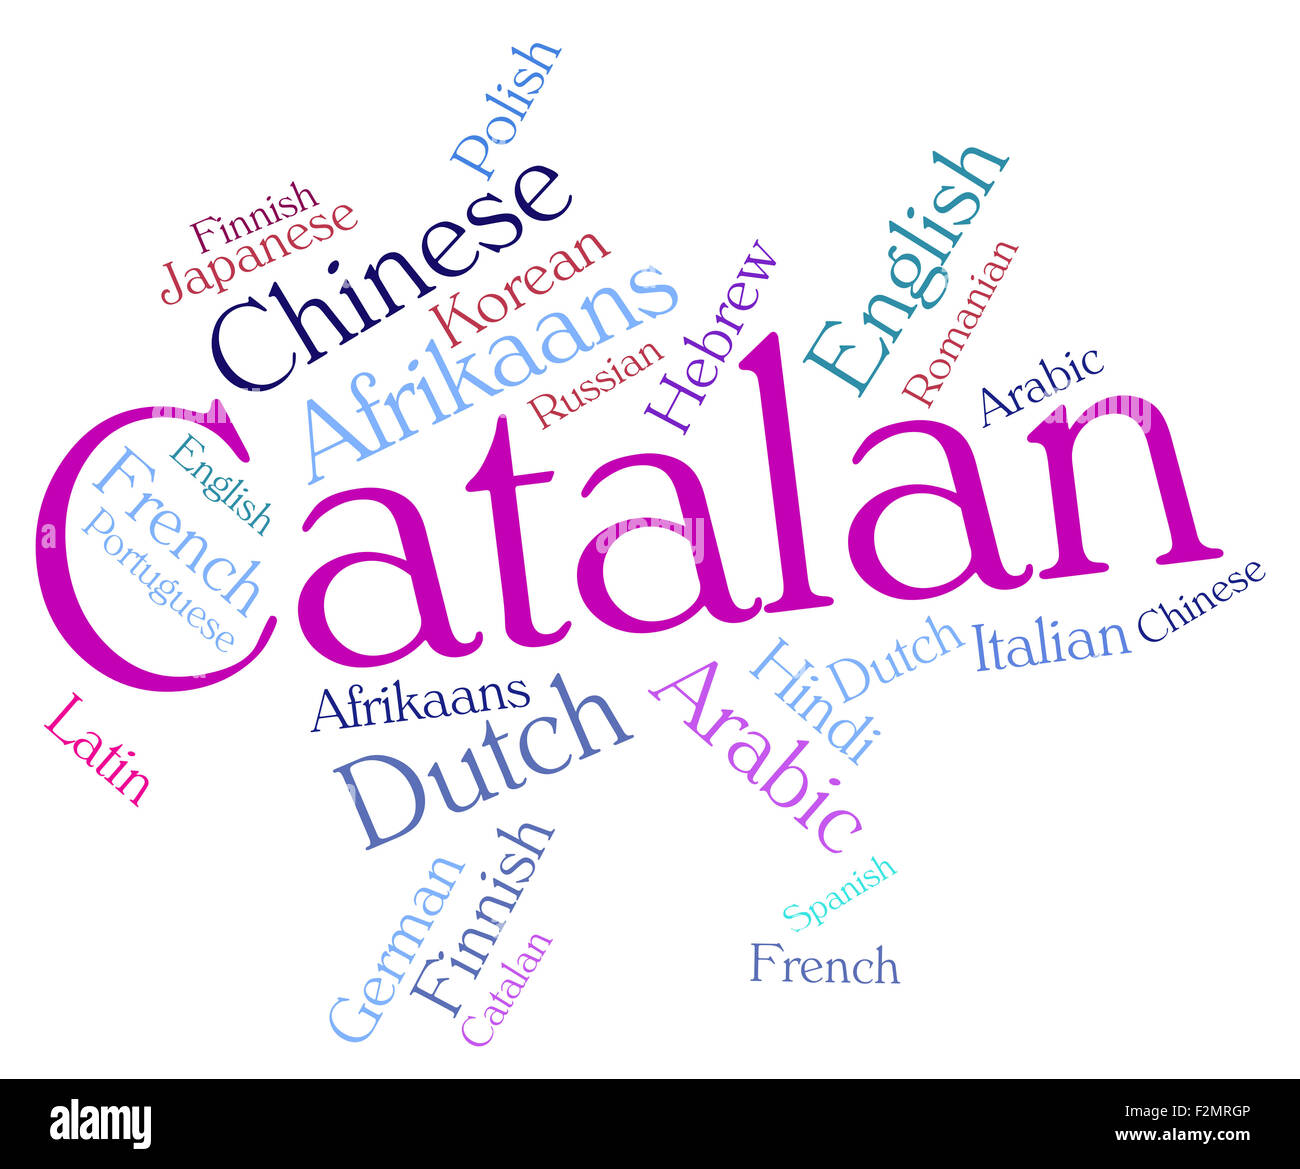 Idioma Catalán Representando Vocabulario Internacional Y Palabra Fotos,  retratos, imágenes y fotografía de archivo libres de derecho. Image 41879168